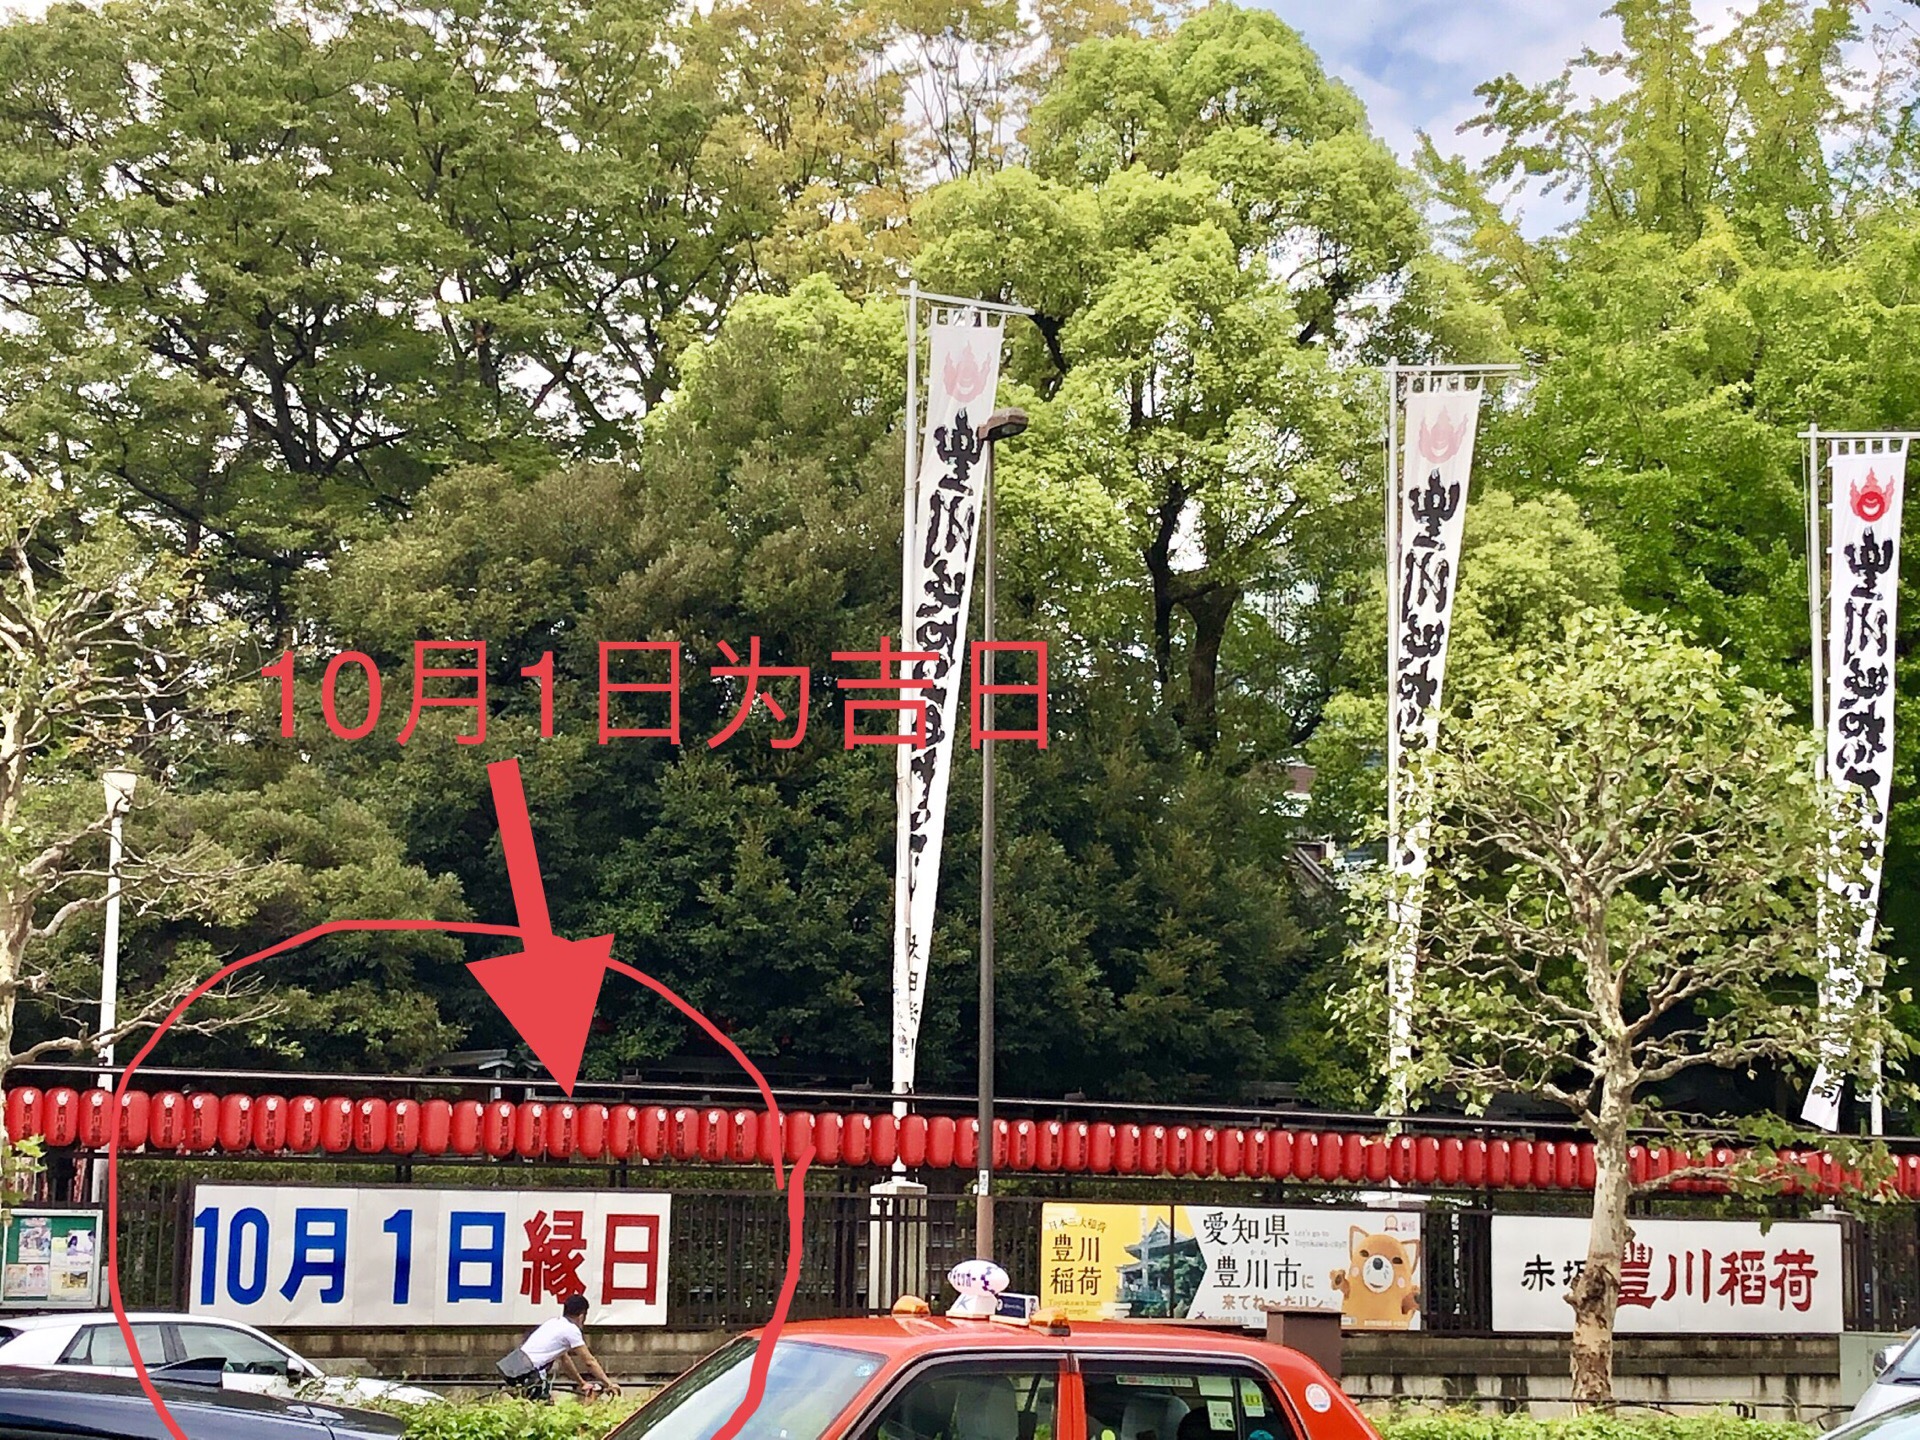 今日为吉日，祖国70周年大庆之日 这家位于东京赤坂的豊川稲荷也在其入口处强调标注今日为吉日